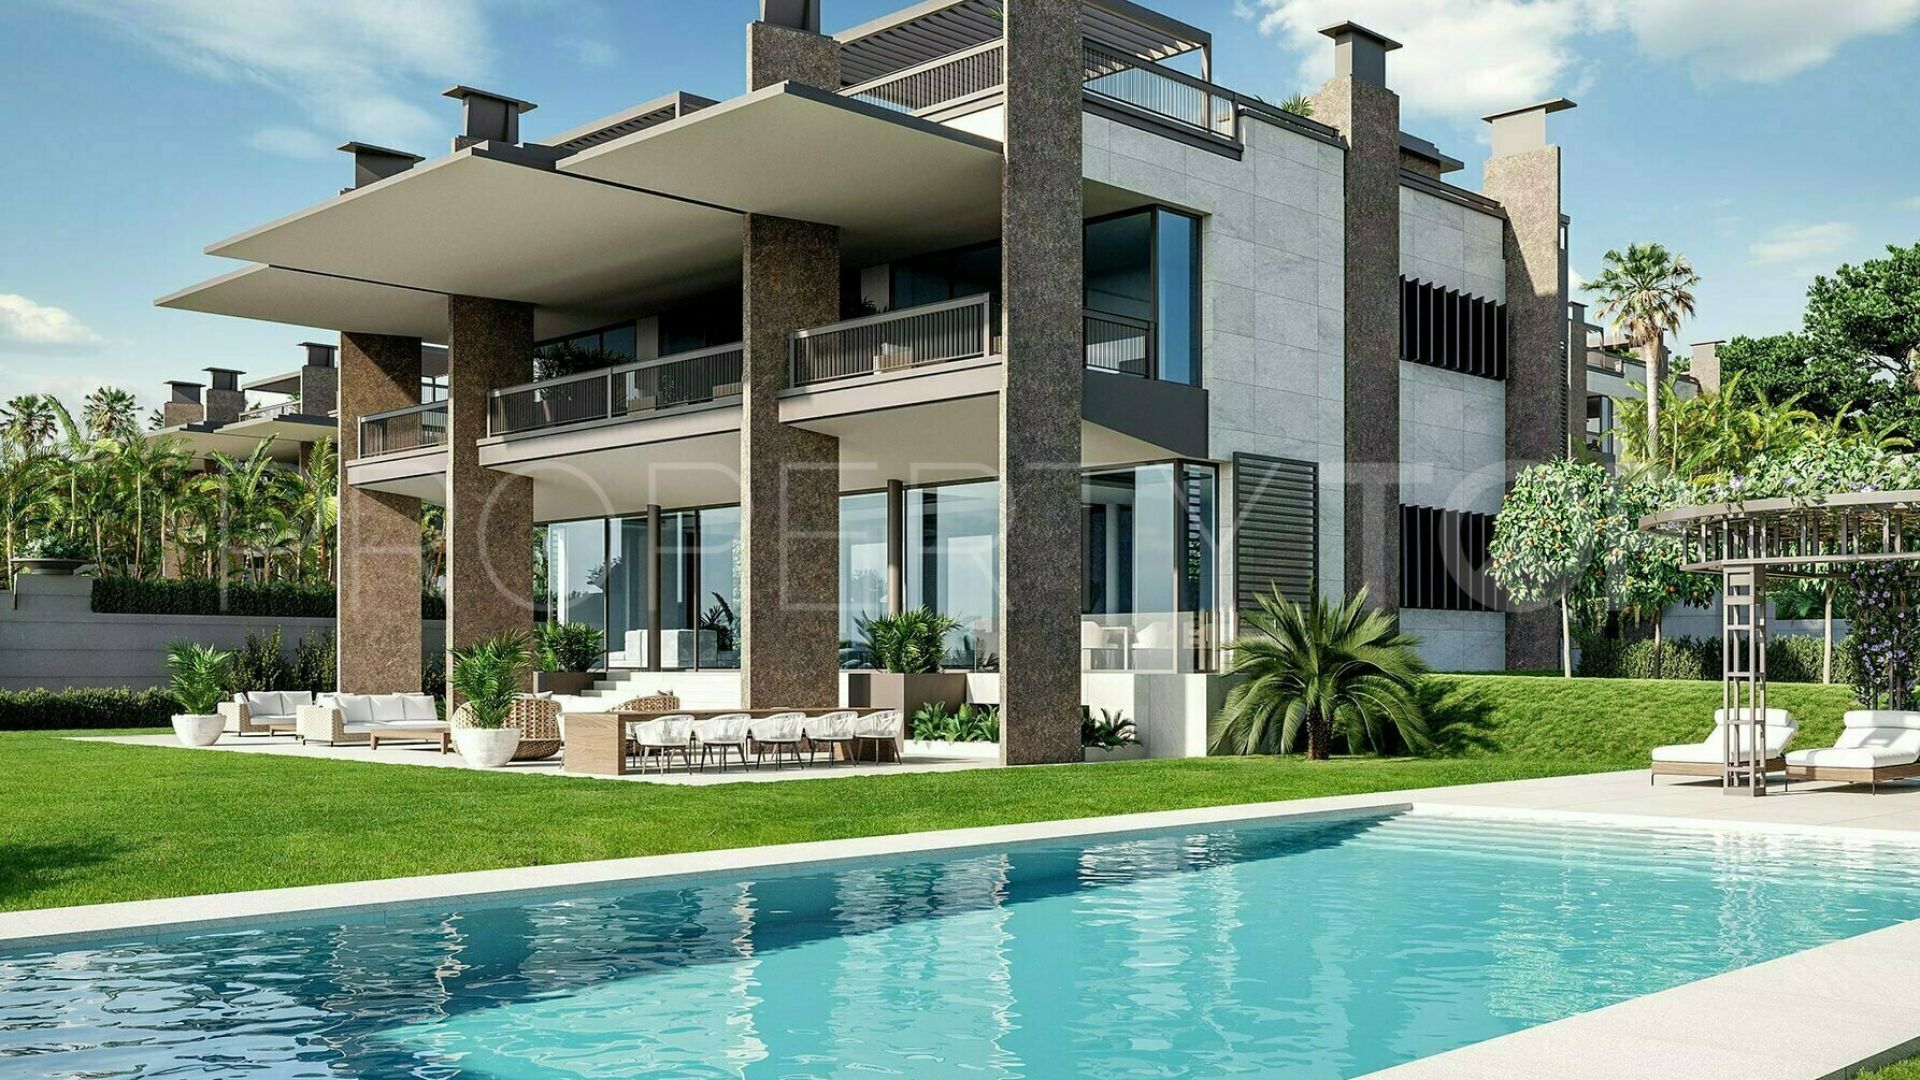 6 bedrooms Marbella - Puerto Banus villa for sale